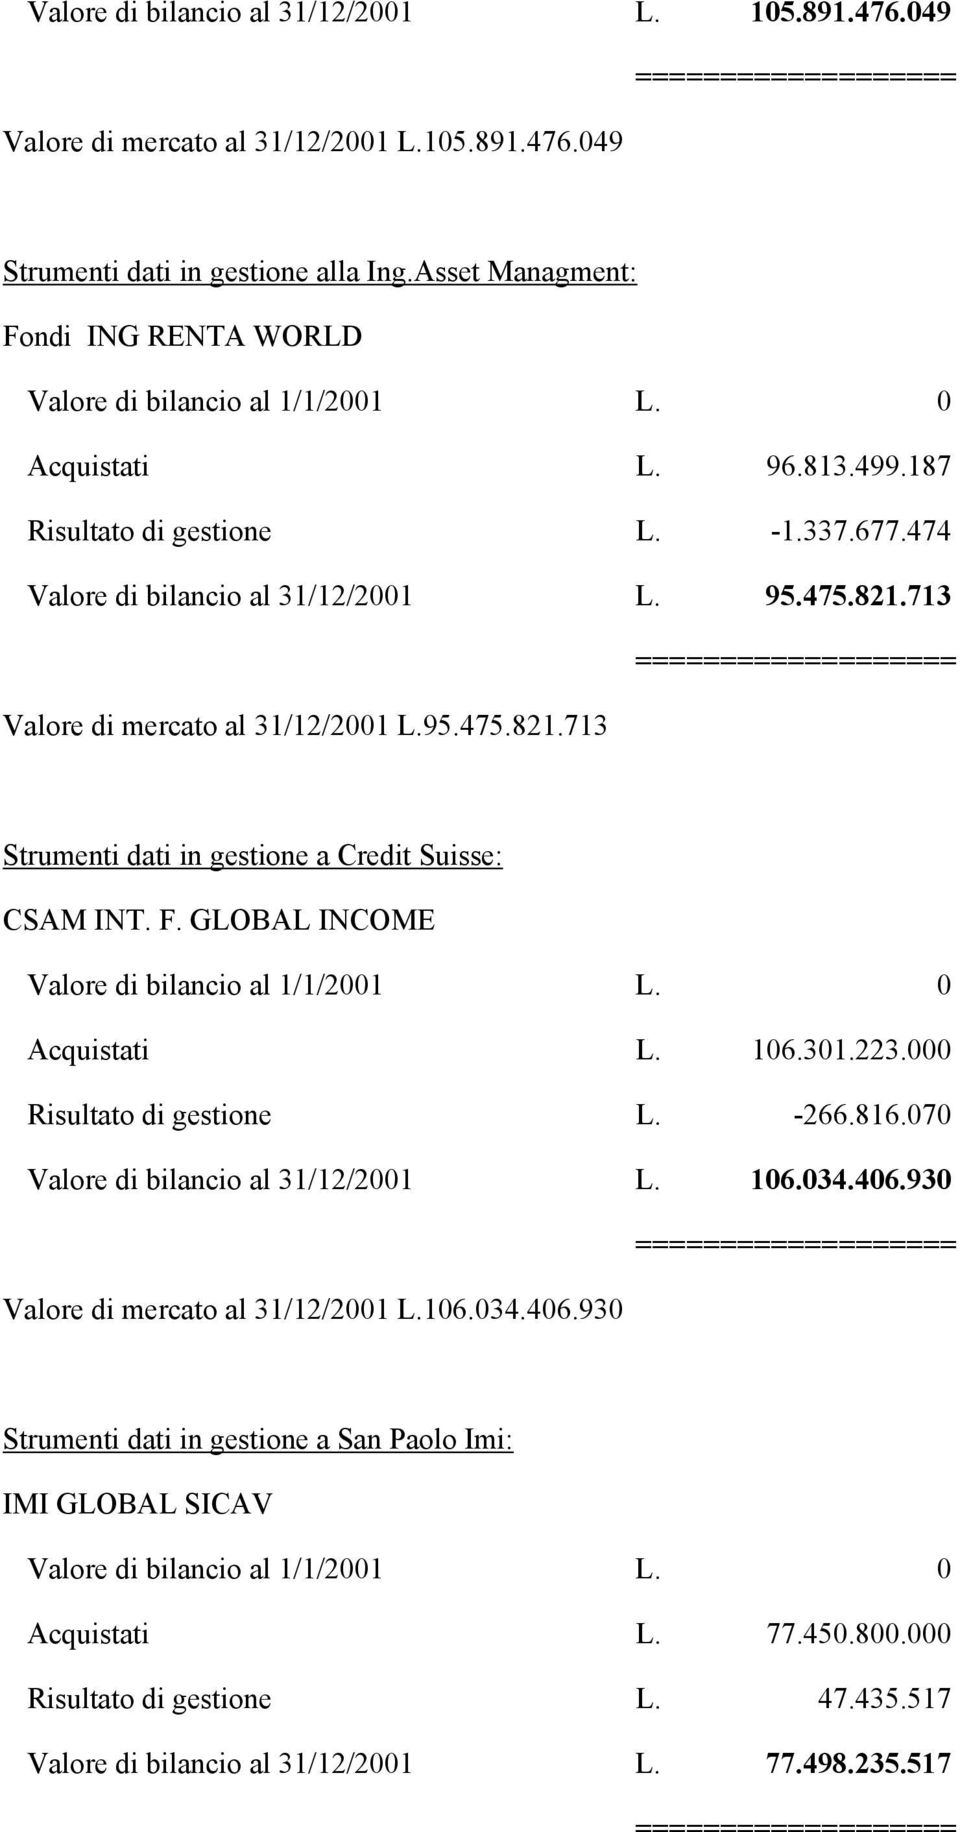 713 =================== Valore di mercato al 31/12/2001 L.95.475.821.713 Strumenti dati in gestione a Credit Suisse: CSAM INT. F. GLOBAL INCOME Valore di bilancio al 1/1/2001 L. 0 Acquistati L. 106.